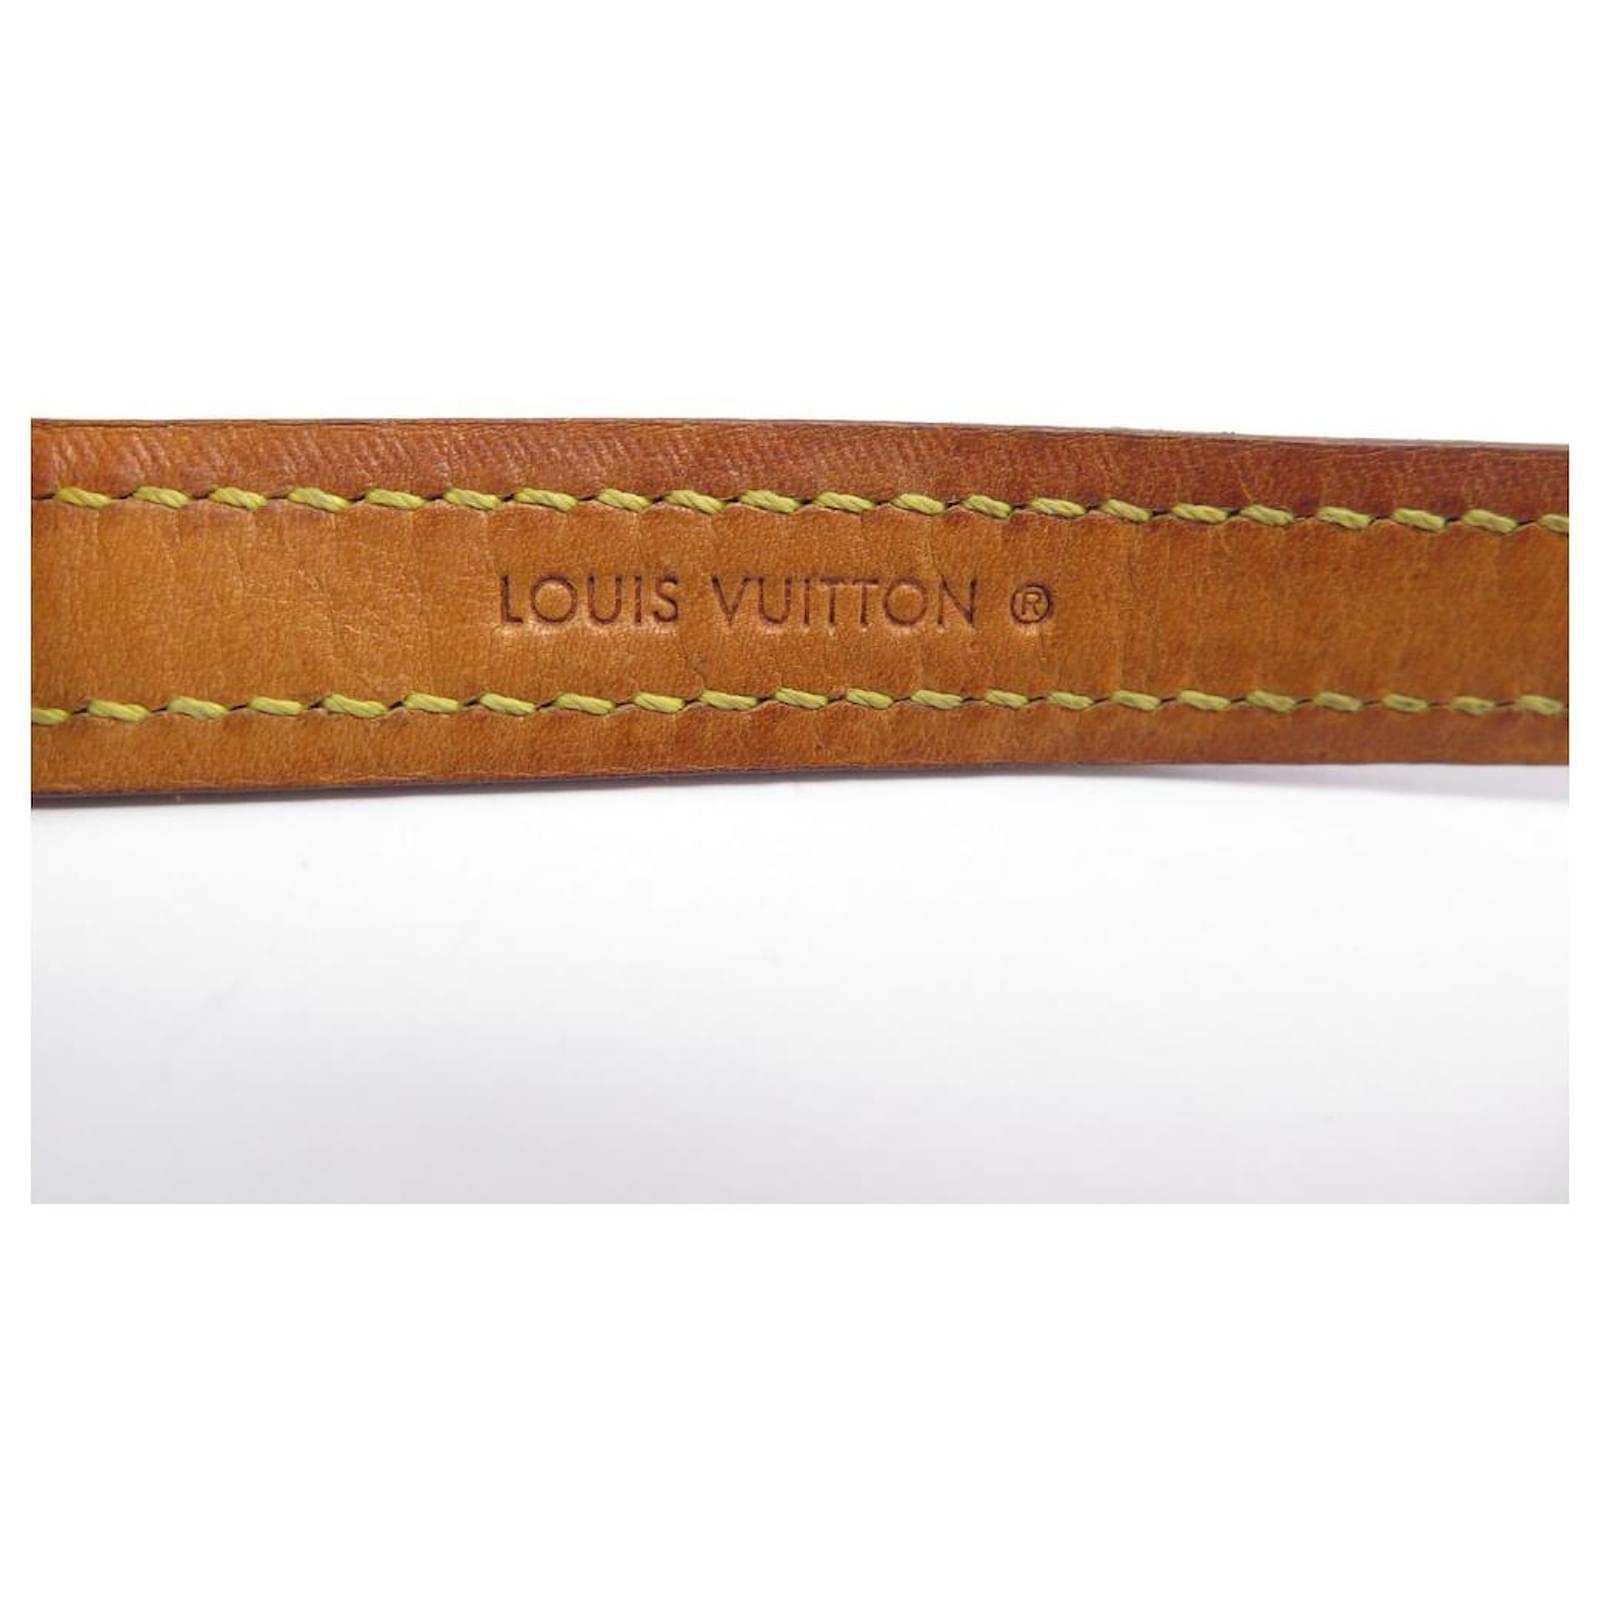 Louis Vuitton Collare Cane